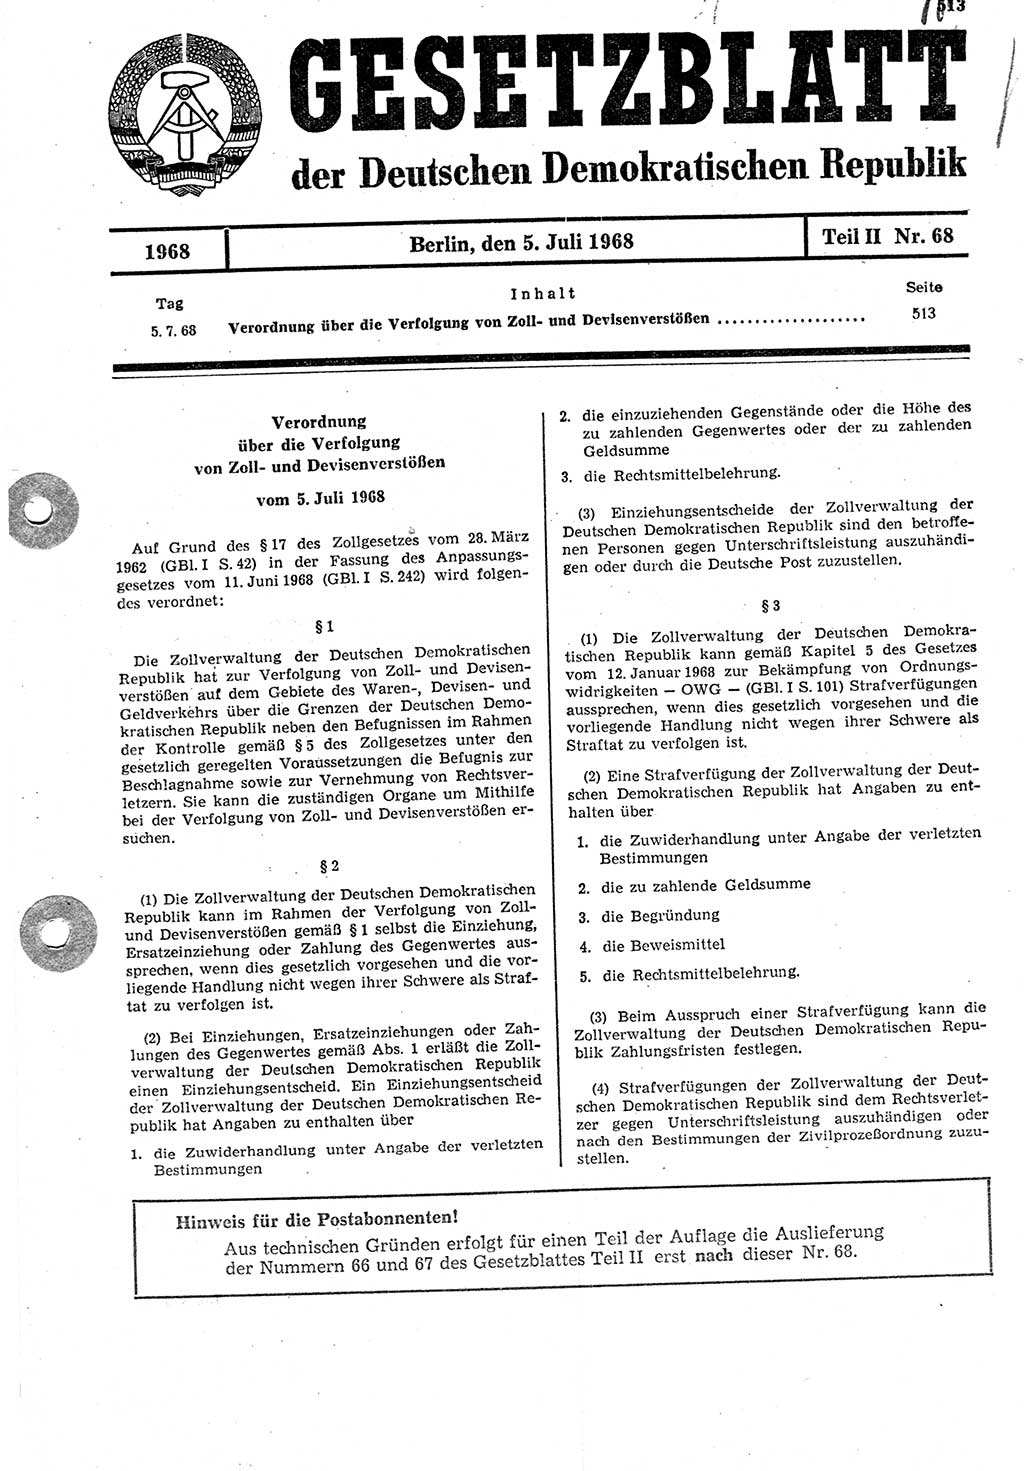 Gesetzblatt (GBl.) der Deutschen Demokratischen Republik (DDR) Teil ⅠⅠ 1968, Seite 513 (GBl. DDR ⅠⅠ 1968, S. 513)